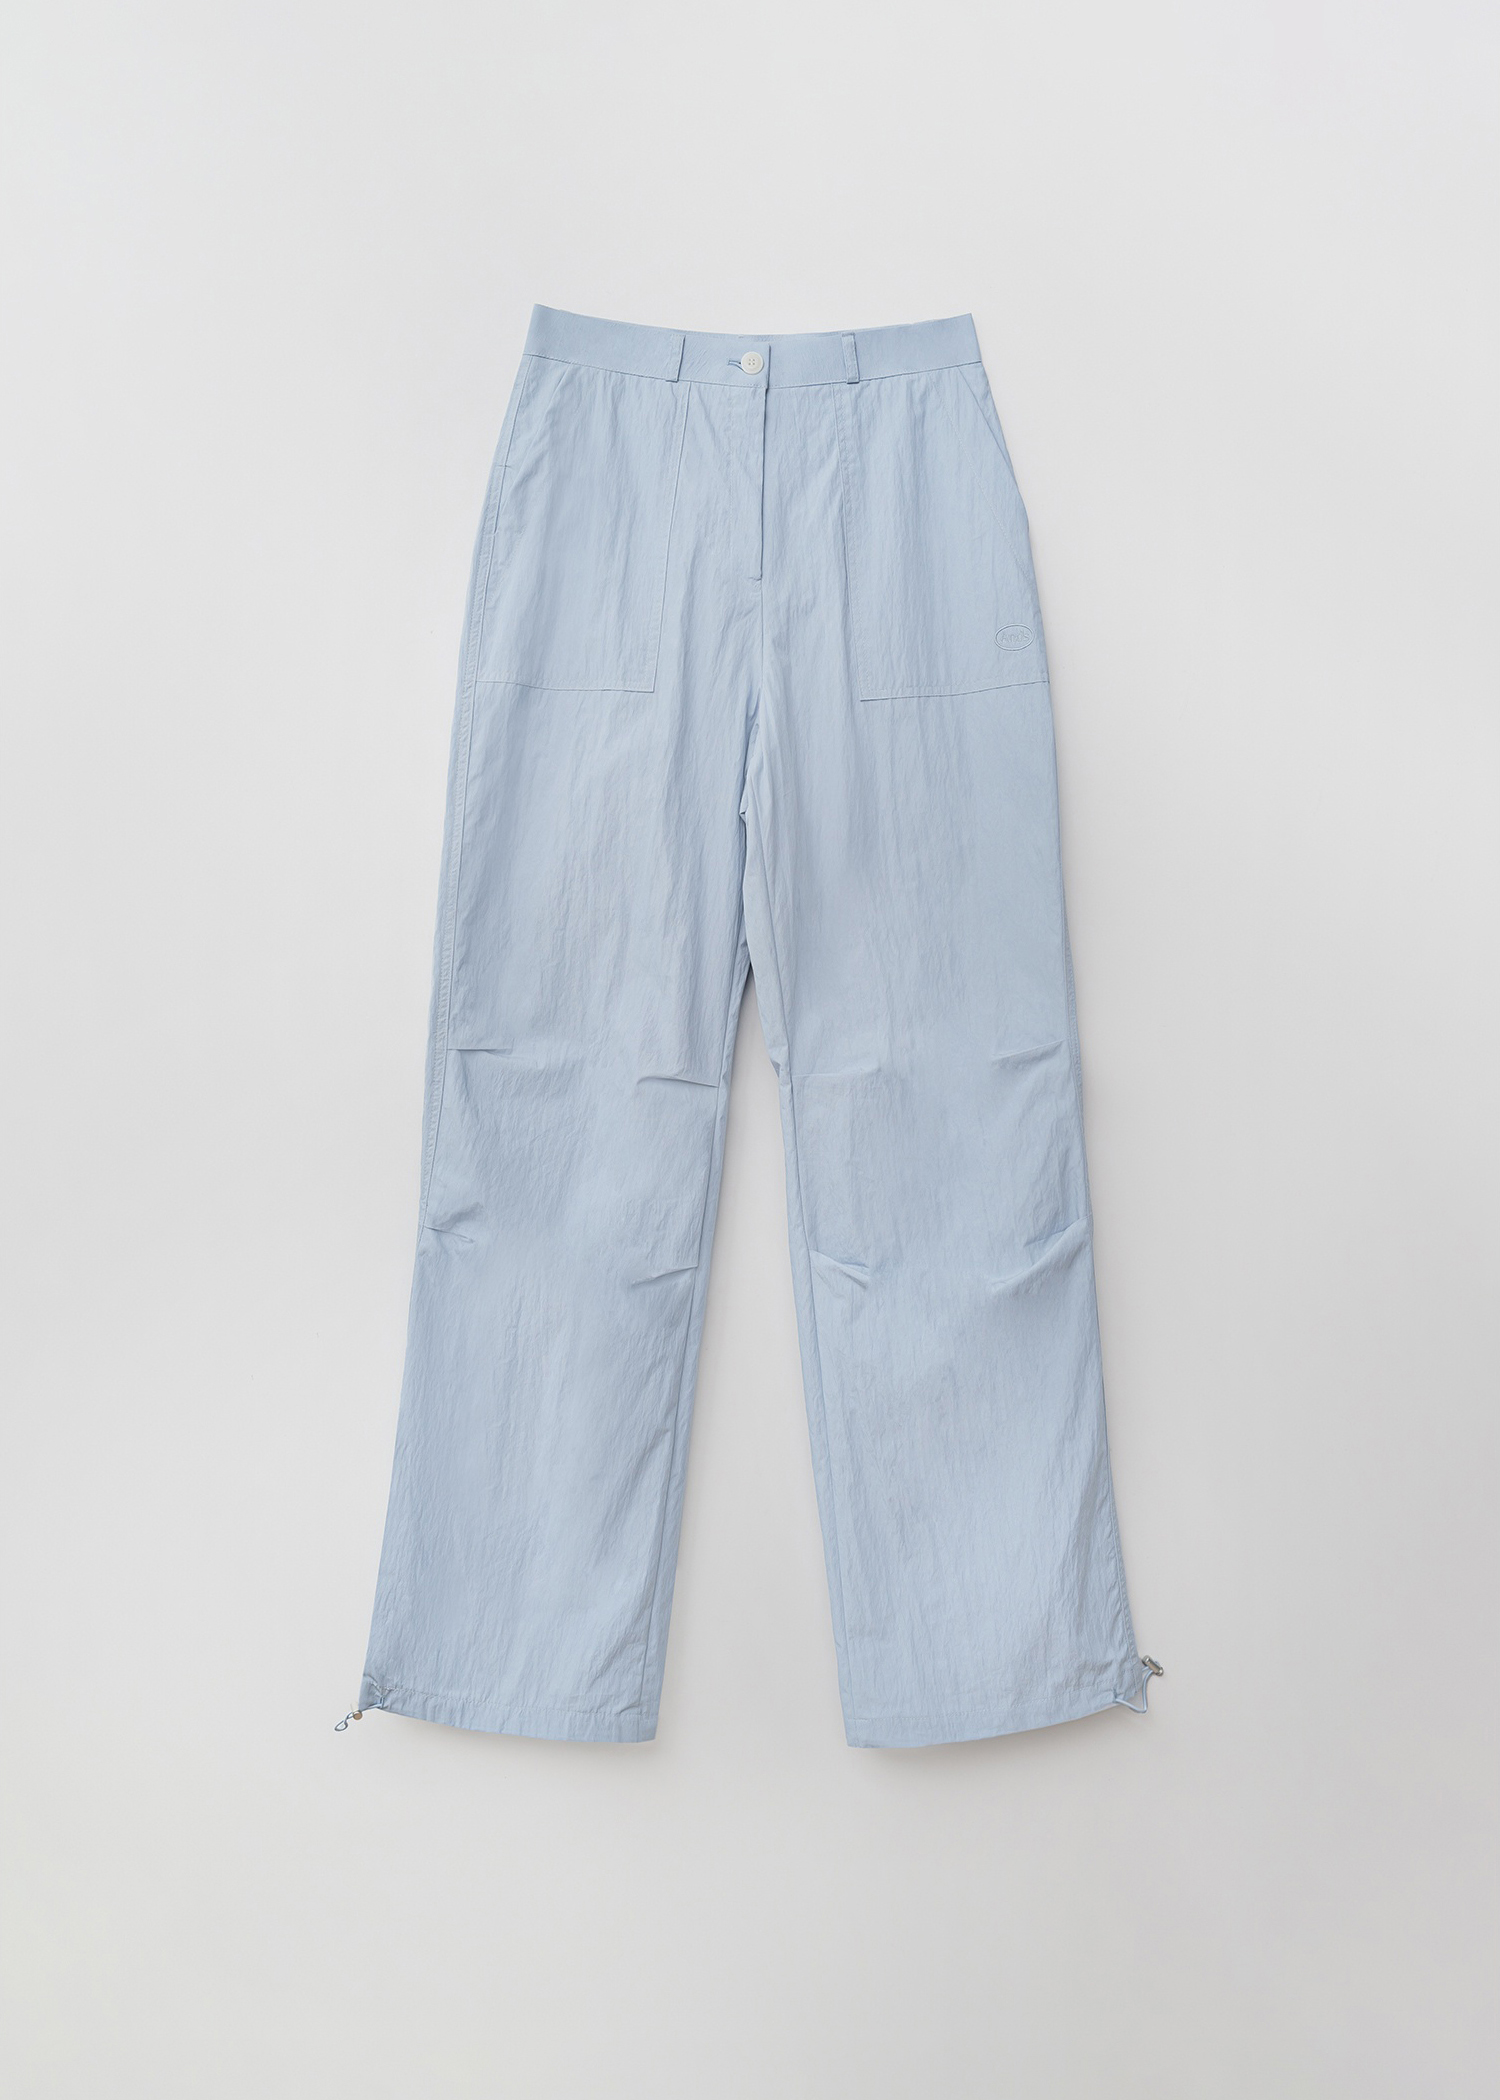 Easy nylon pants (blue)